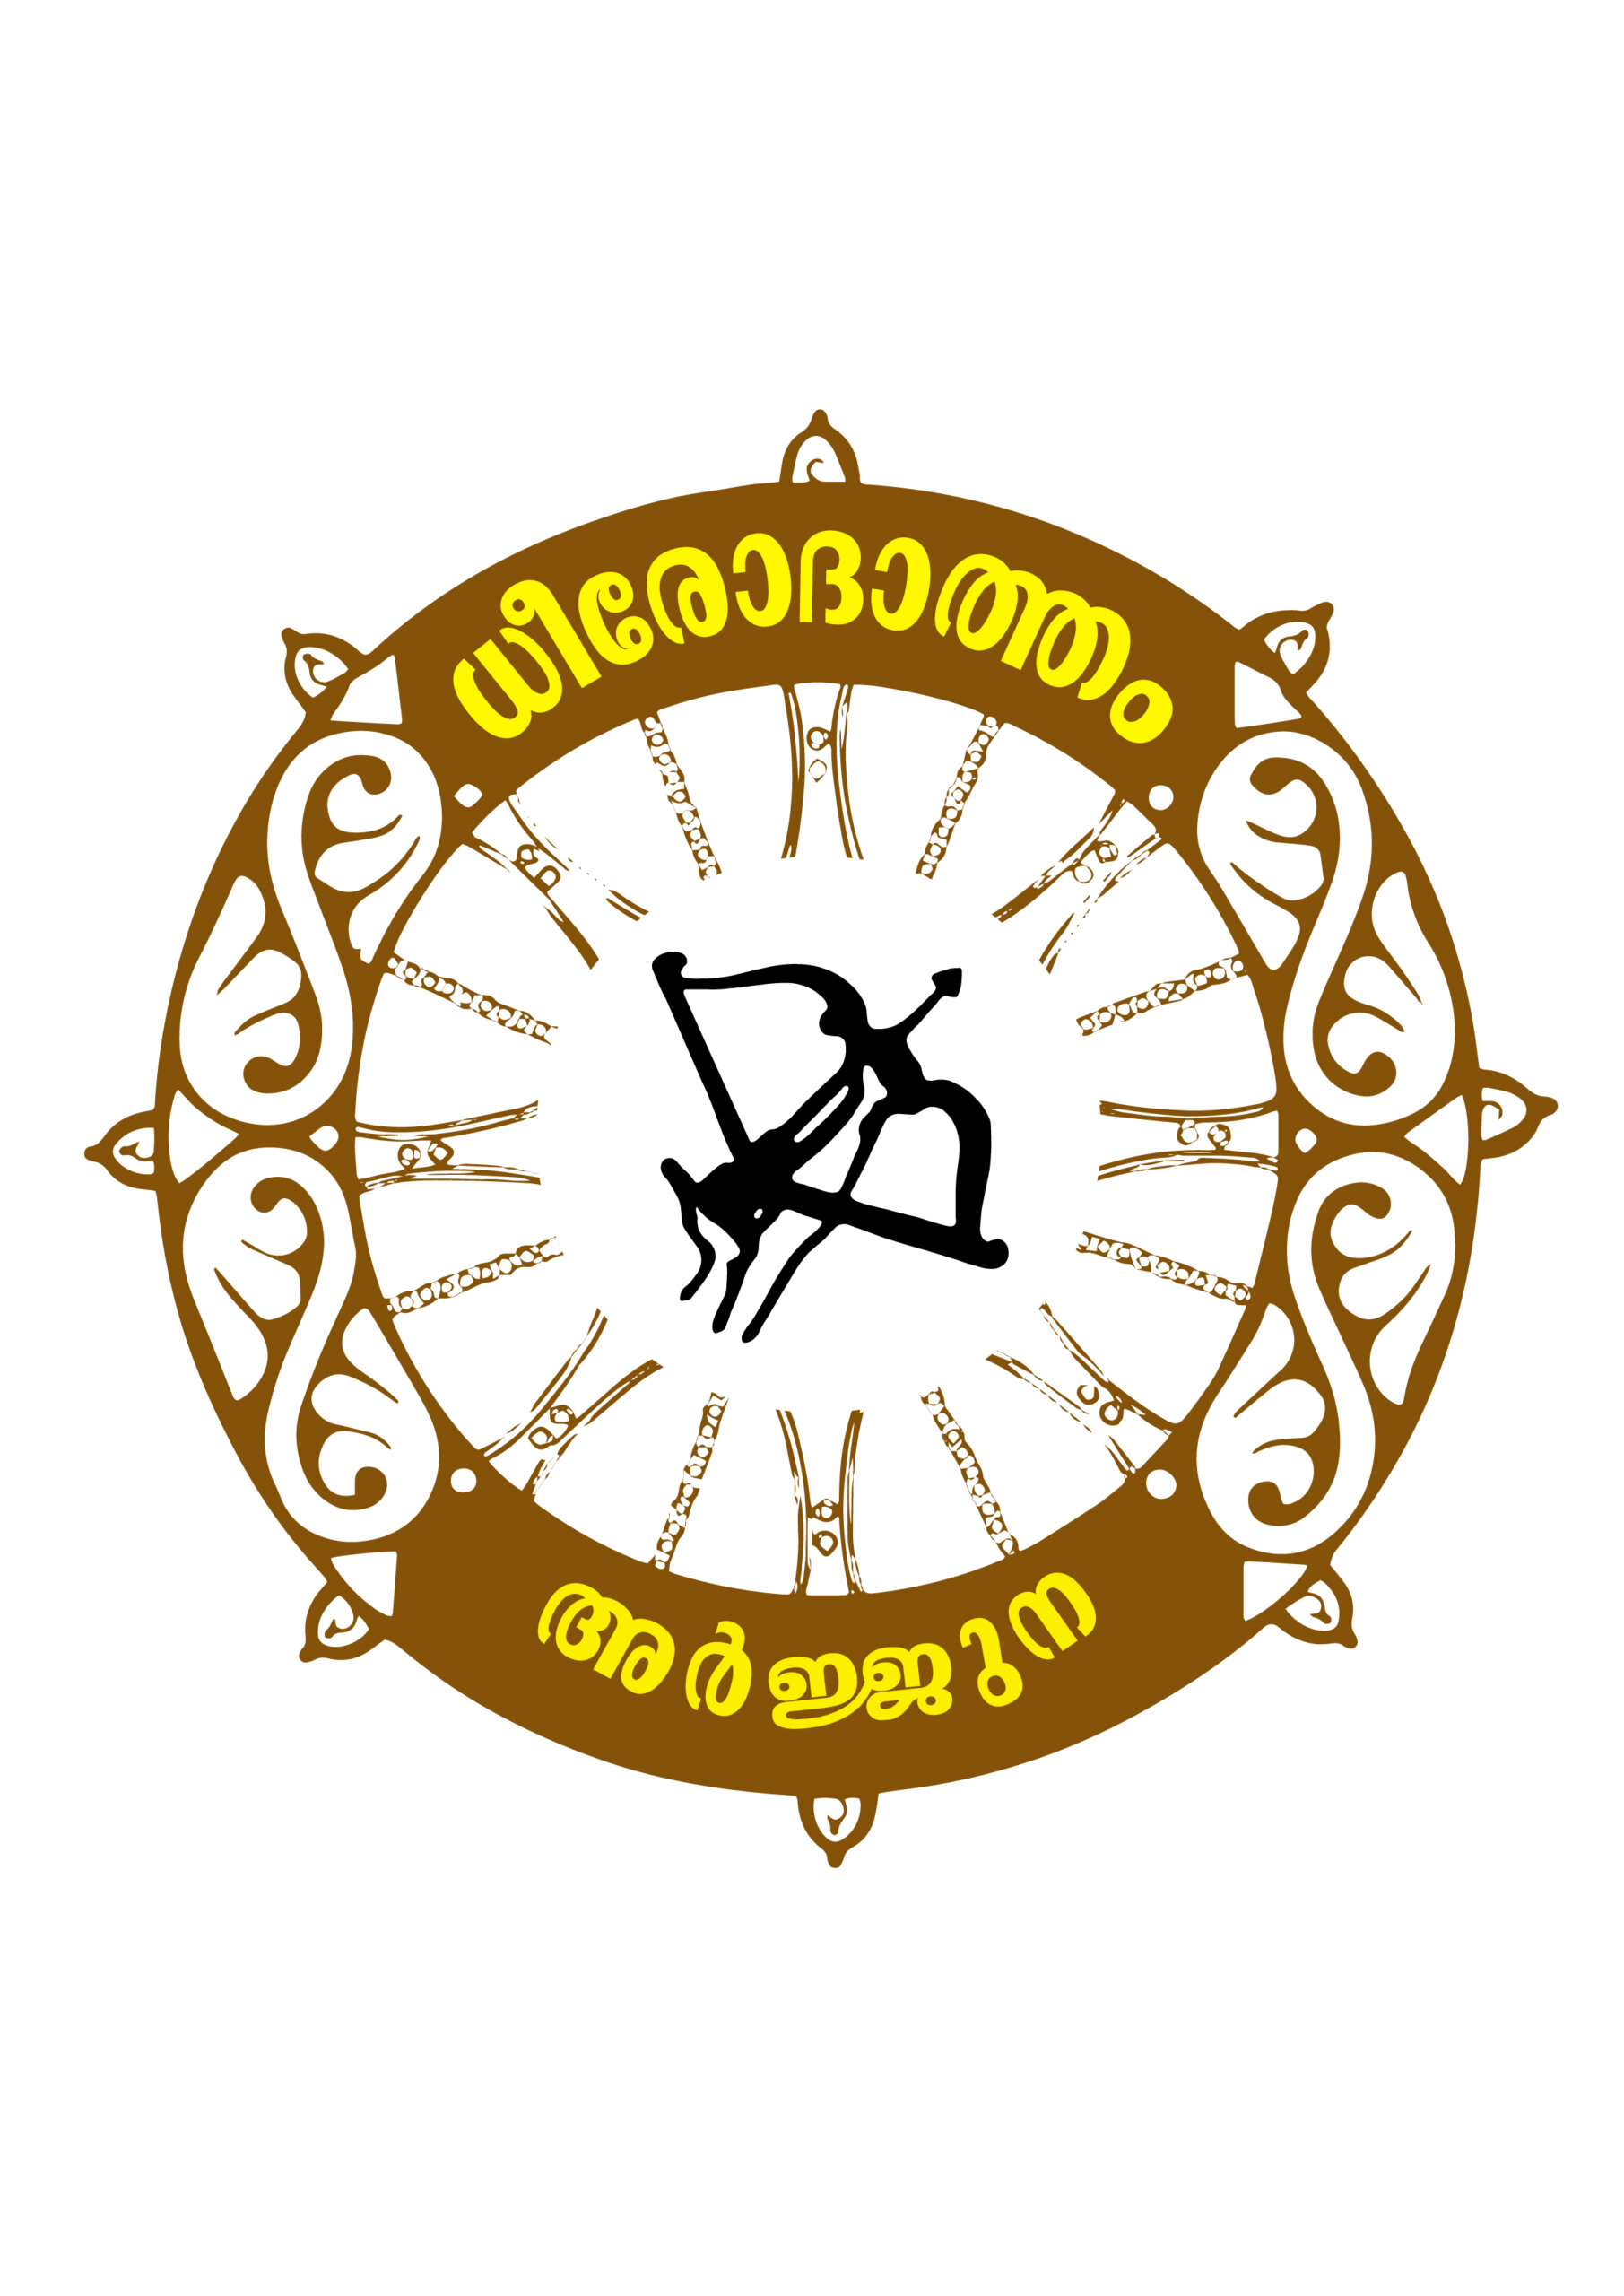 Dheeroodaatham Logo